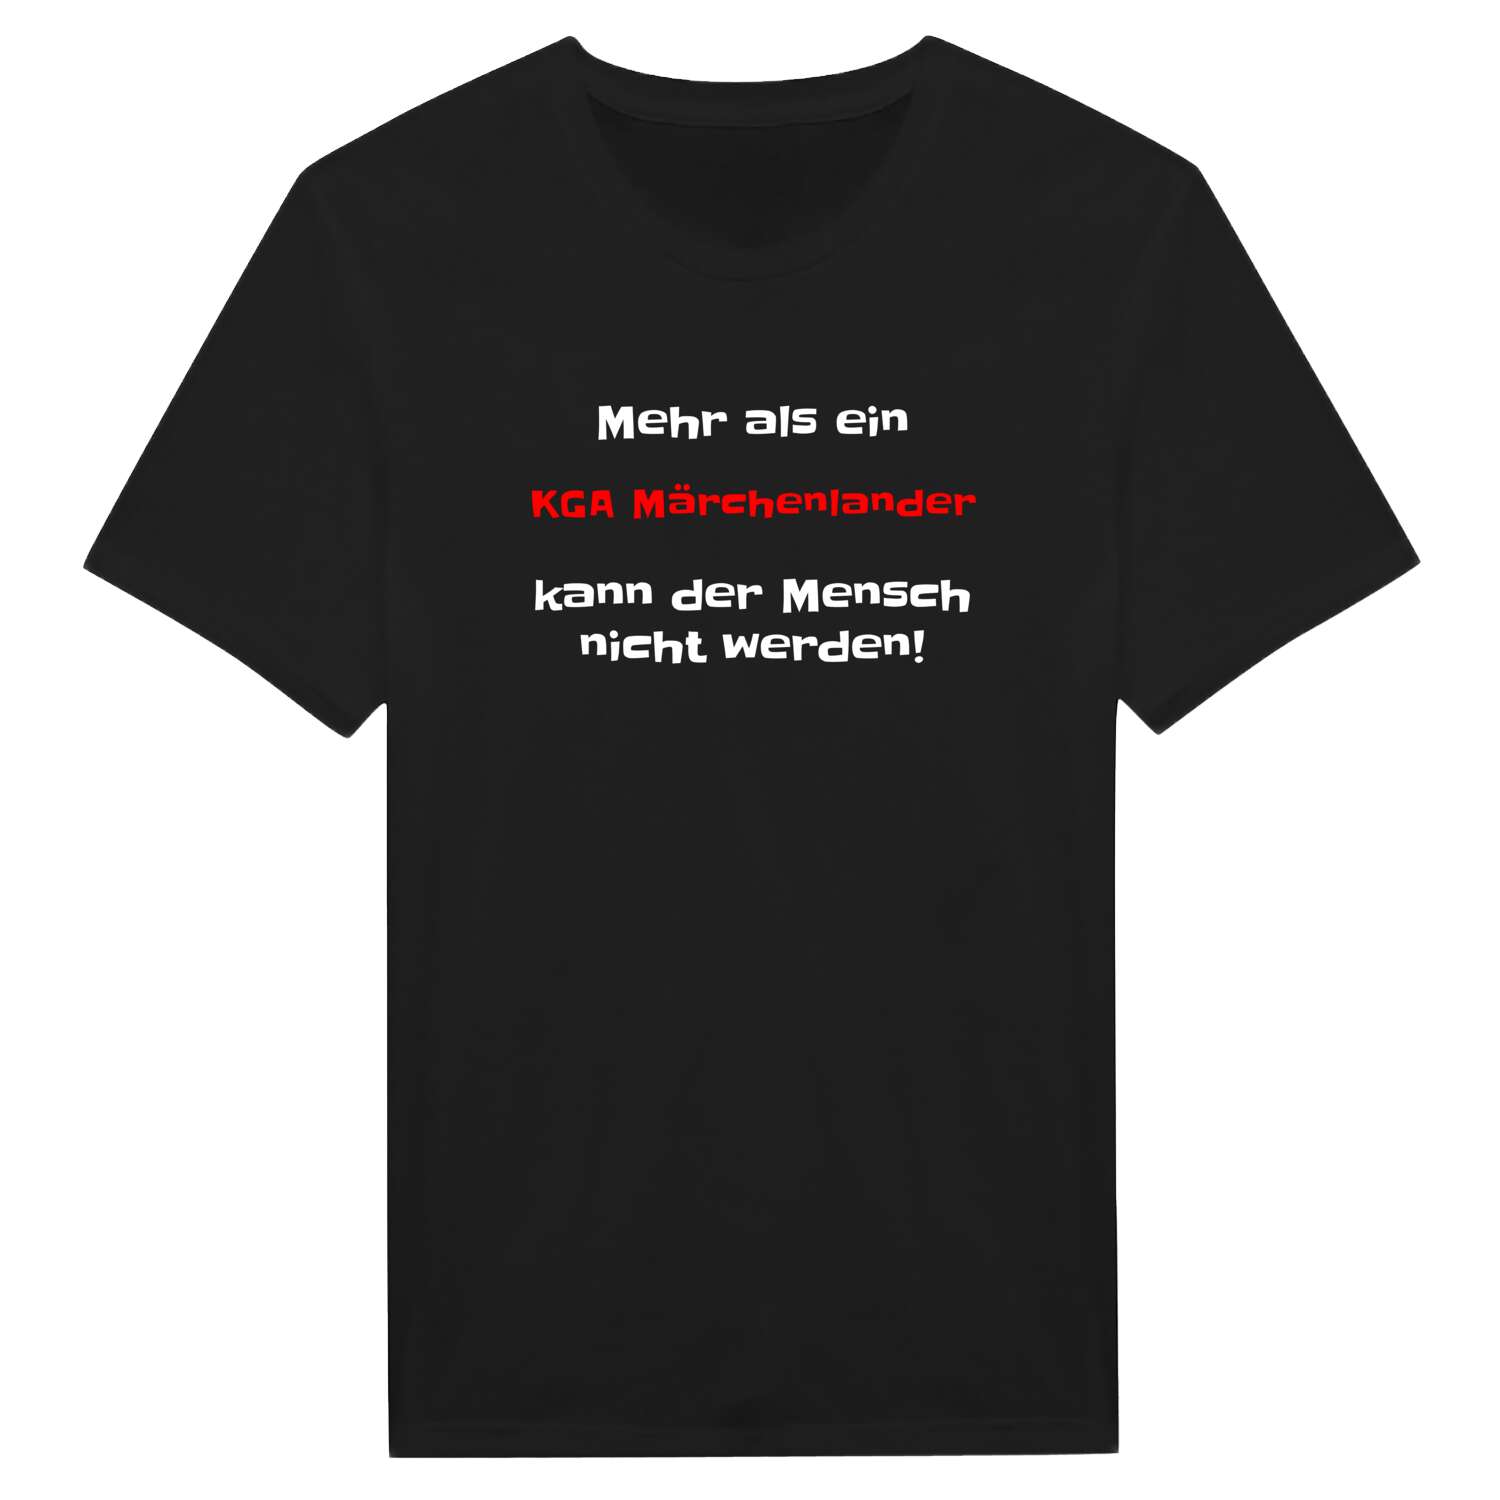 KGA Märchenland T-Shirt »Mehr als ein«